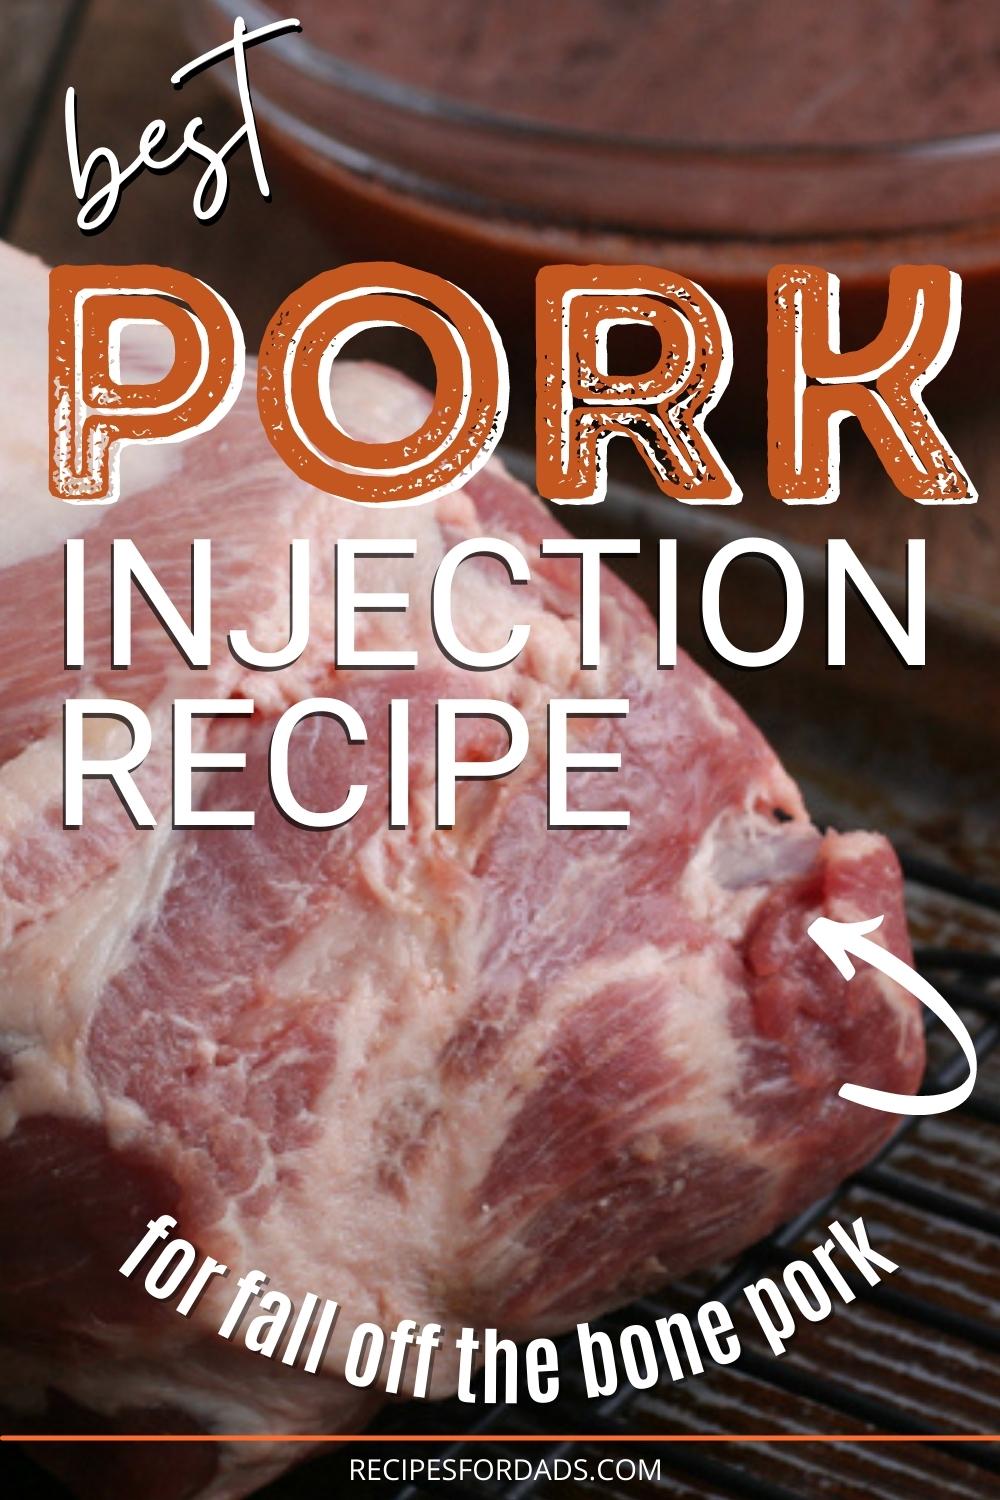 pork shoulder injection recipe graphic for pinterest